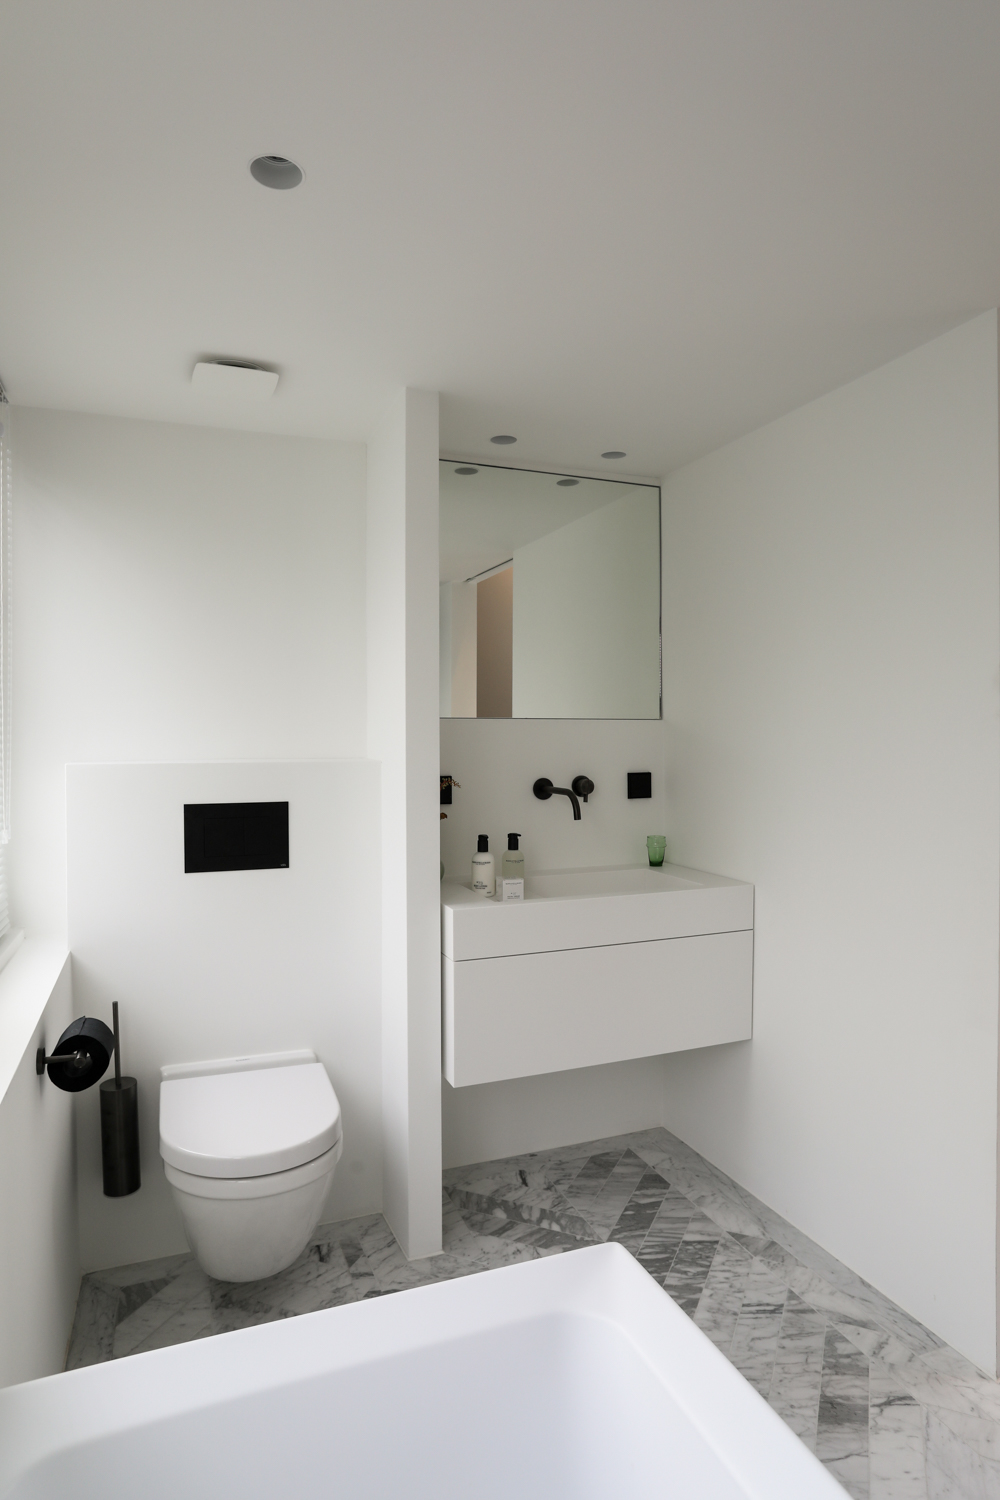 Een super mooie kleine badkamer met strakke muren en plafonds, waar trimless spots ingebouwd zijn. Klik hier voor meer foto's.